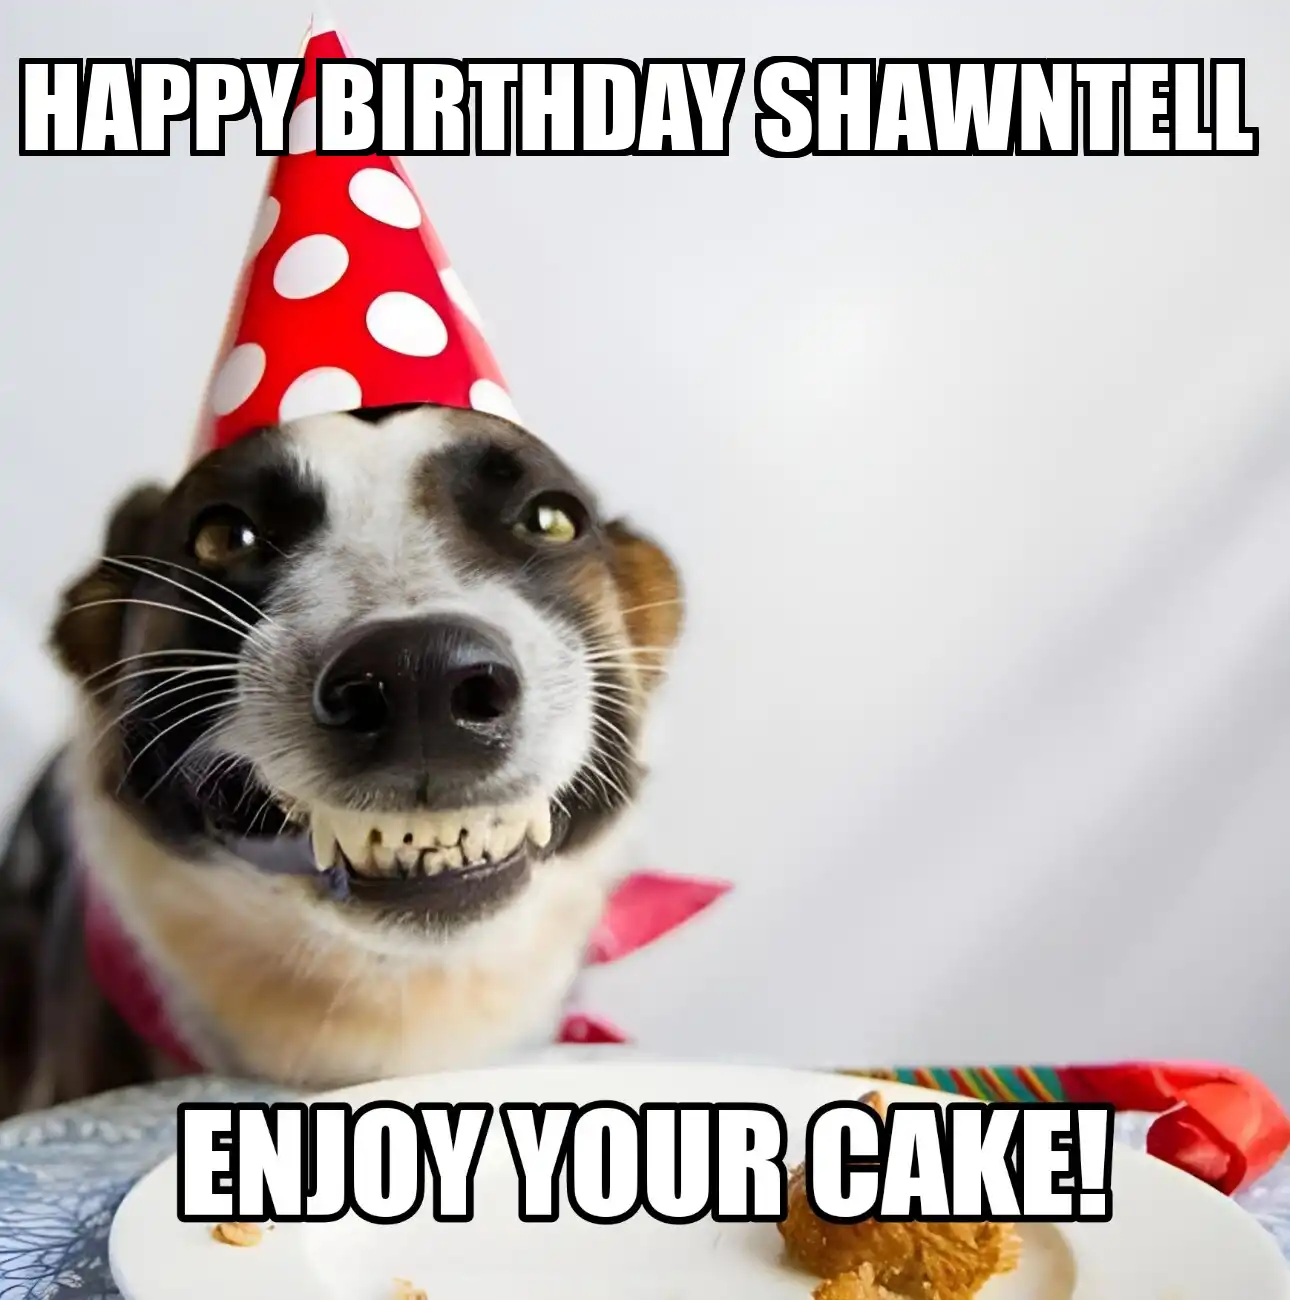 Happy Birthday Shawntell Enjoy Your Cake Dog Meme